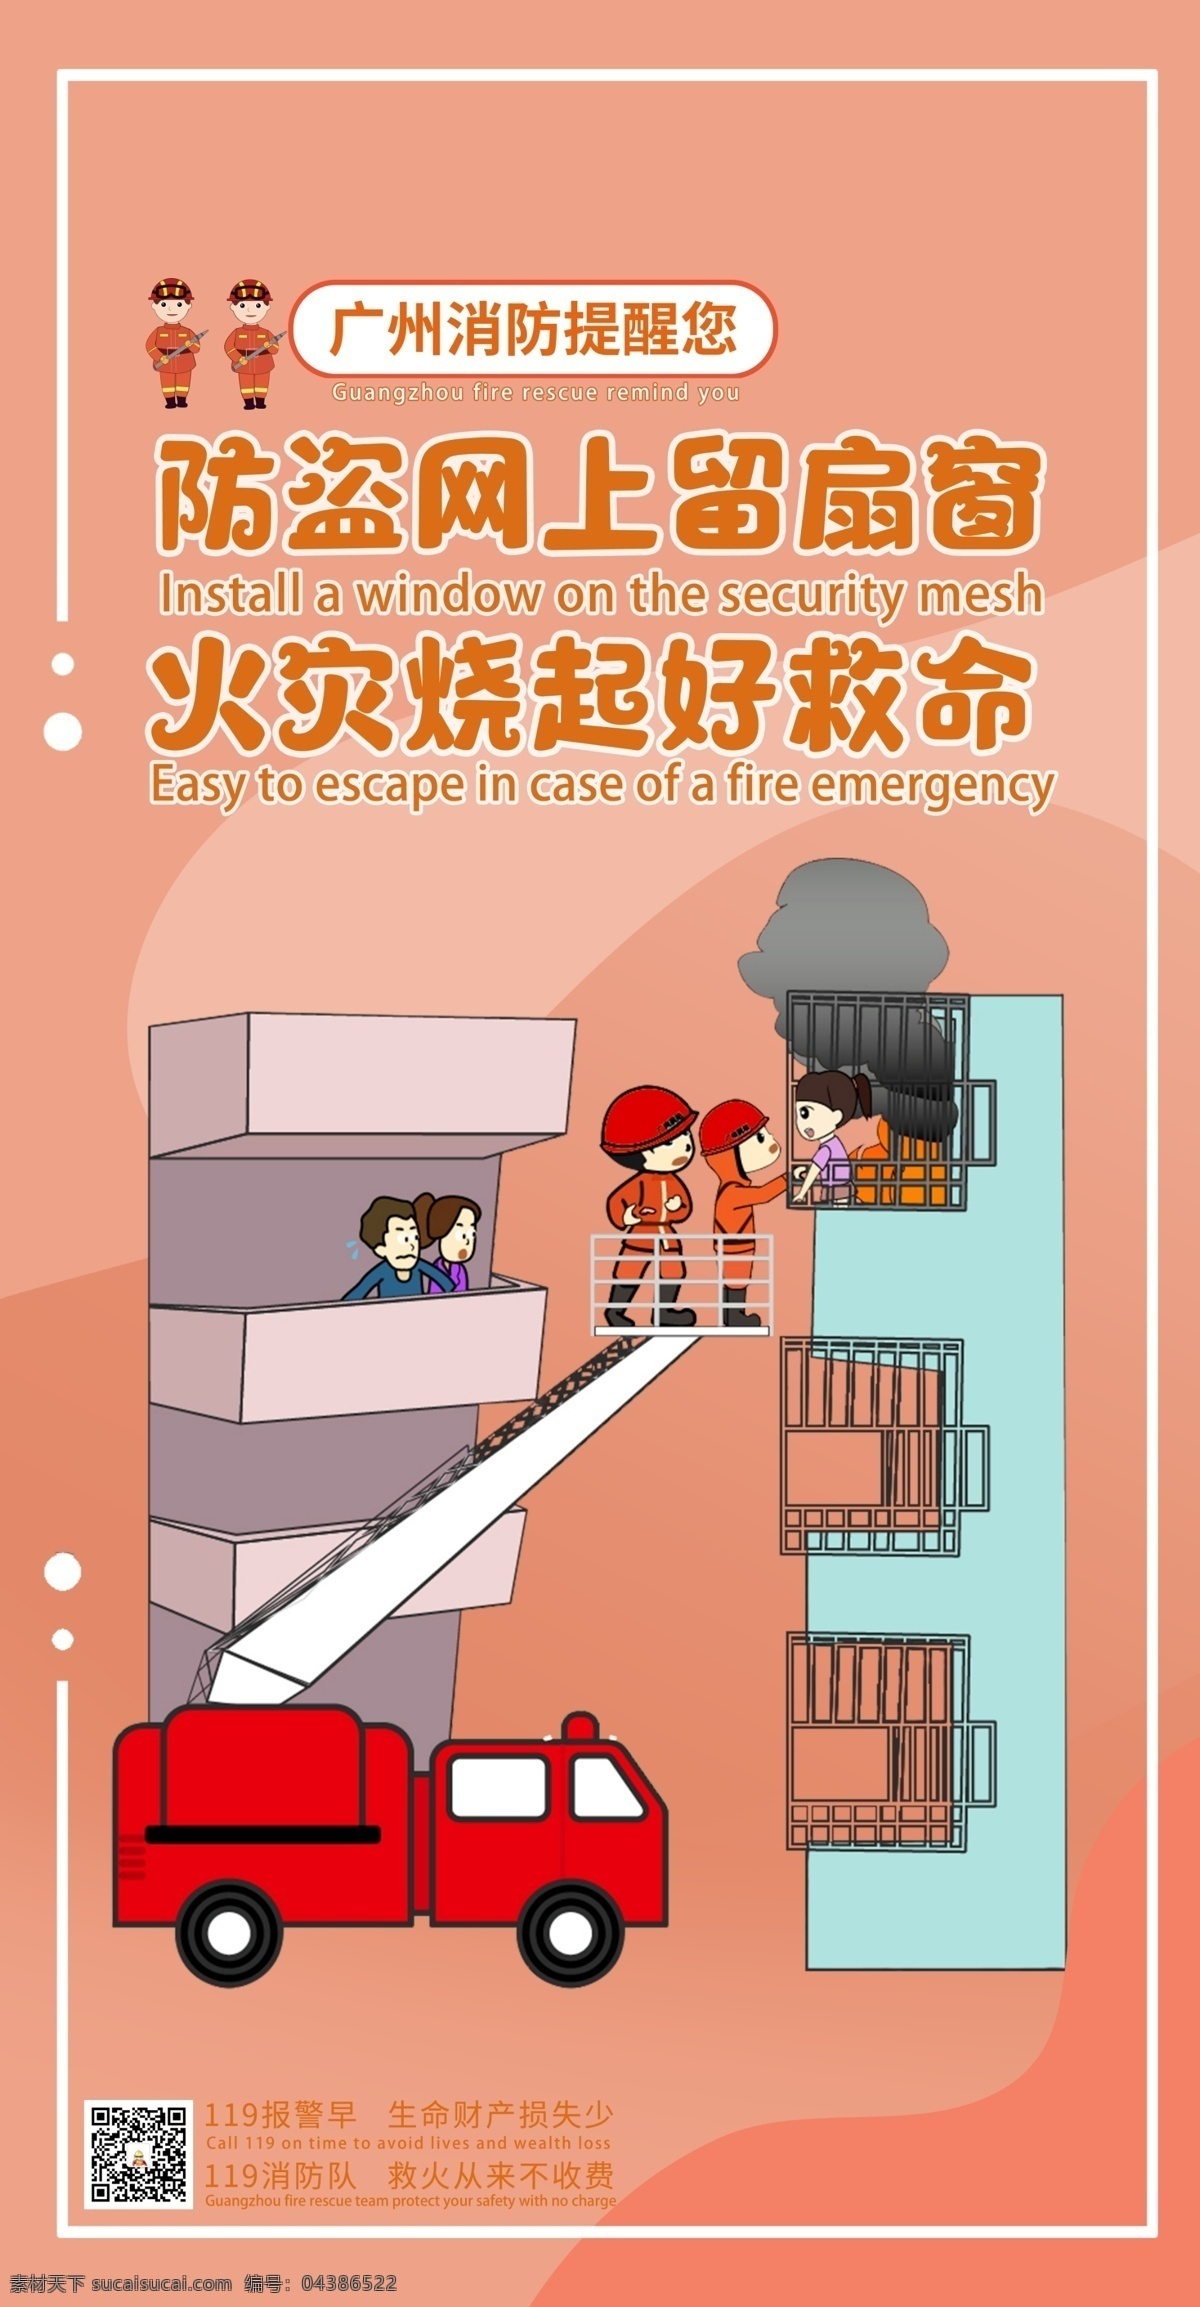 消防 安全 提示 动漫 公益 海报 竖板 消防安全 广州市消防 消防救援 消防提示 安全提示 消防宣传 动漫公益 党消防 分层